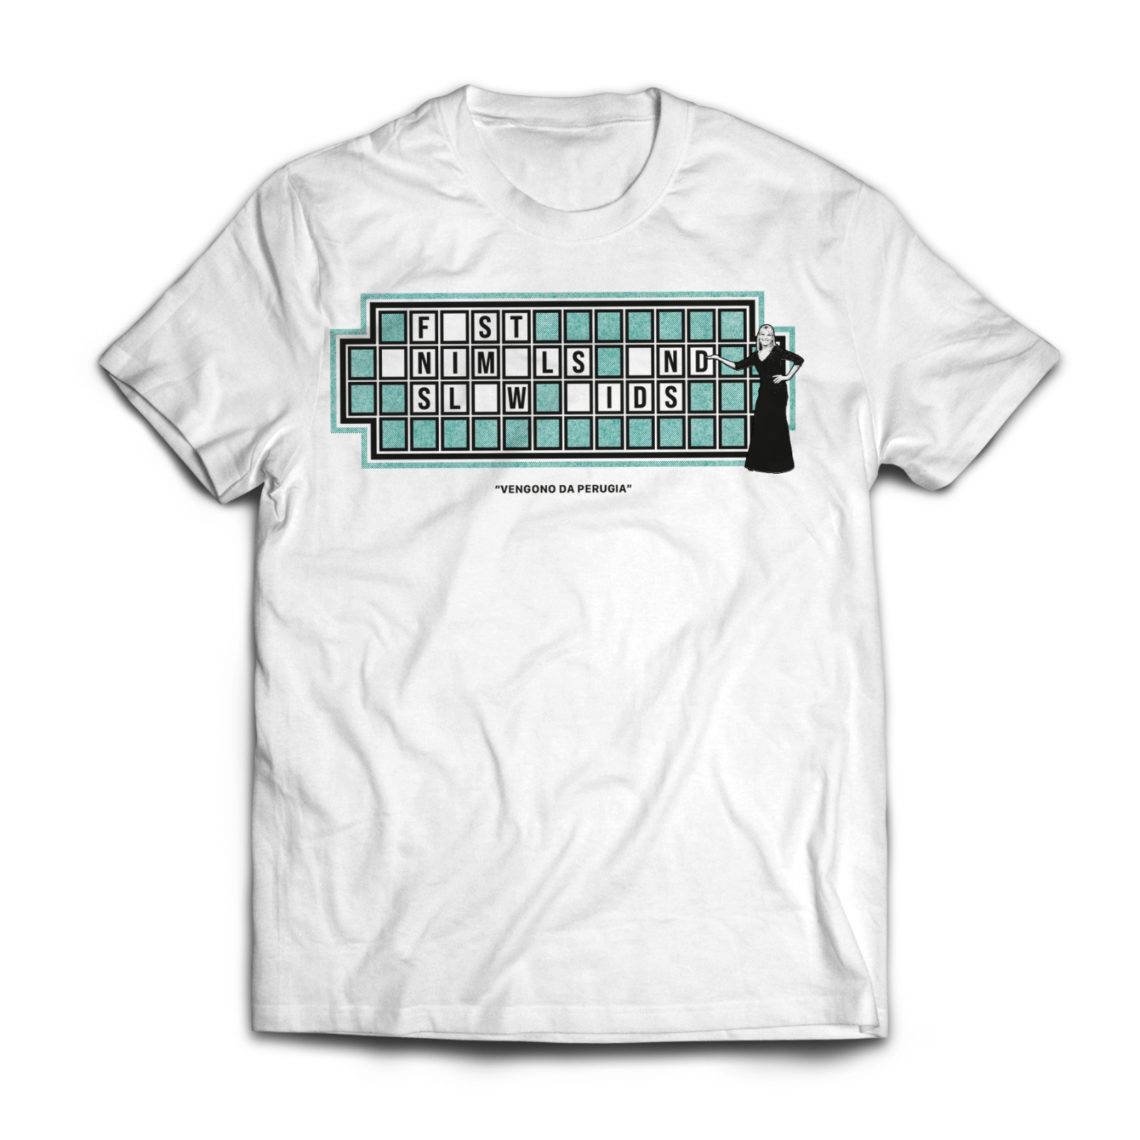 T-Shirt bianca con grafica ruota della fortuna

Disponibile nelle taglie S | M | L | XL